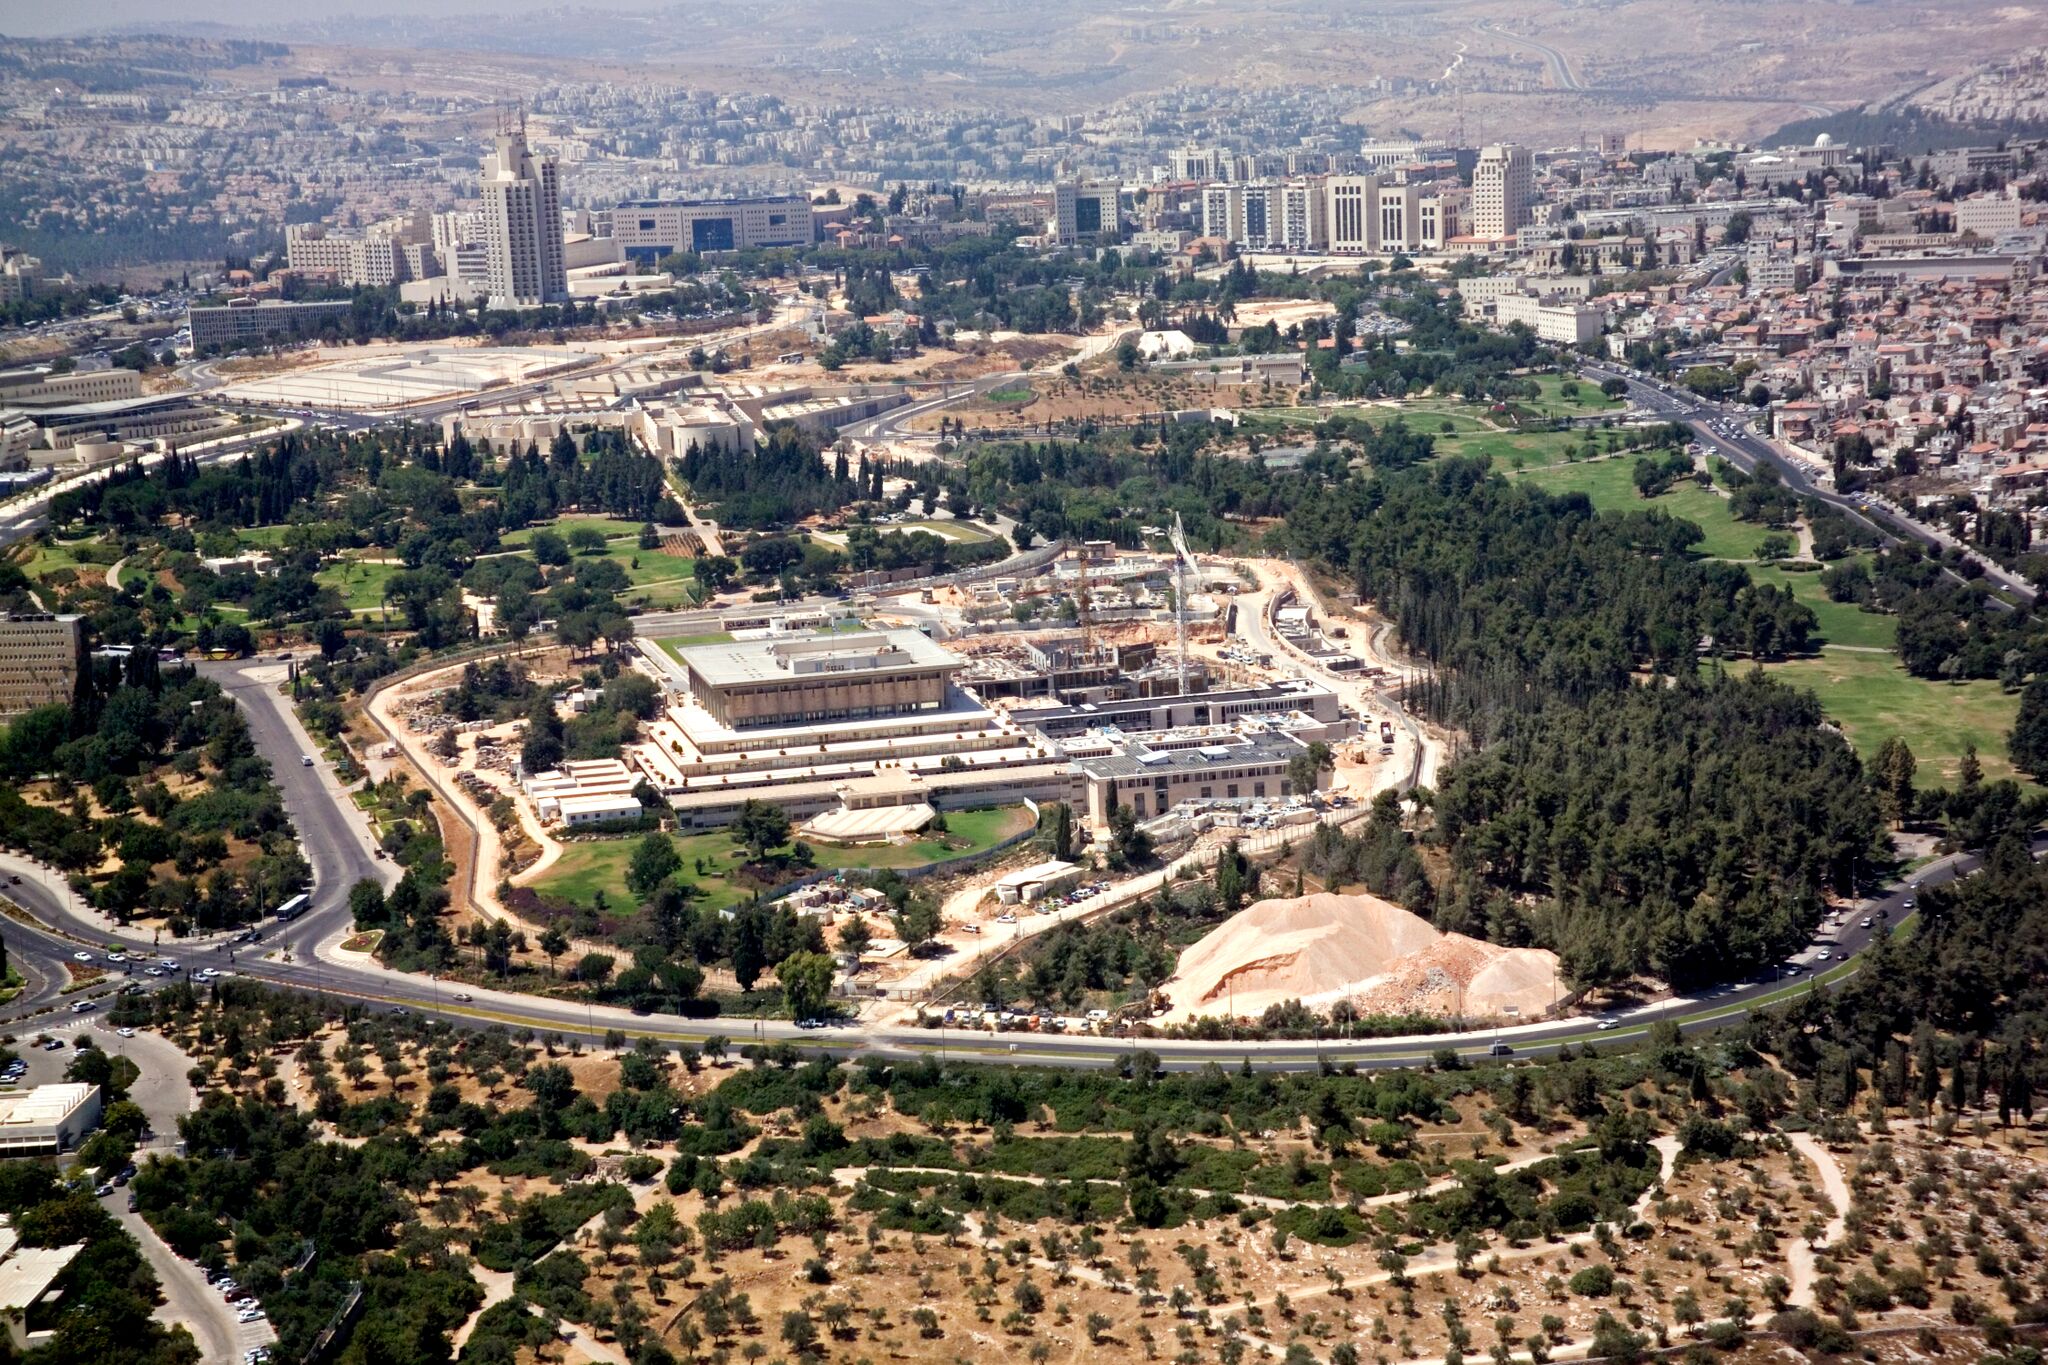 Knesset Israel Expansion